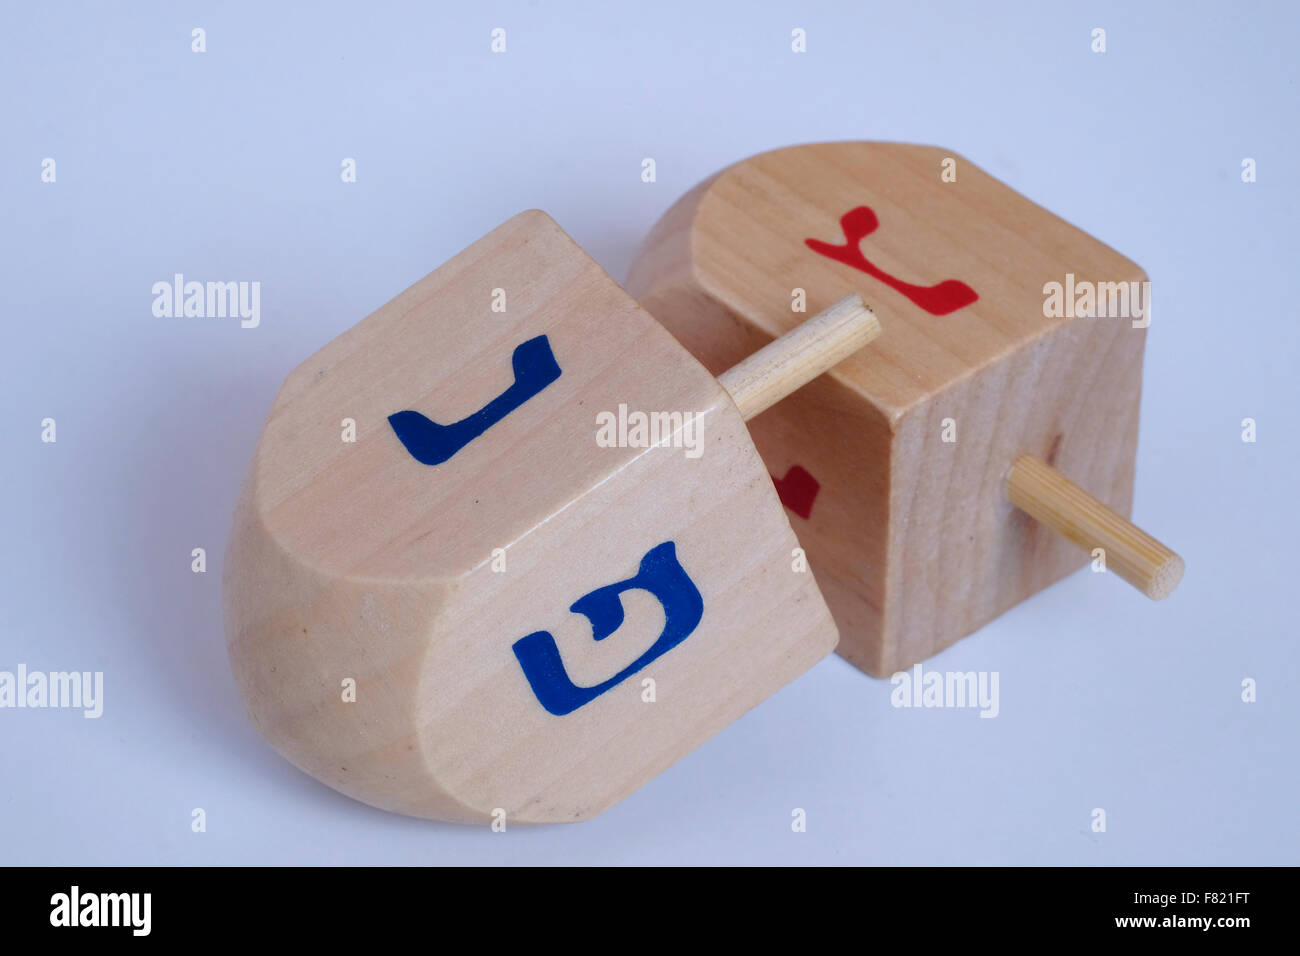 Dreidel in legno un giocattolo tradizionale cuscinetto alfabeto ebraico ha suonato durante la festa ebraica di Hanukkah, la festa delle luci Foto Stock